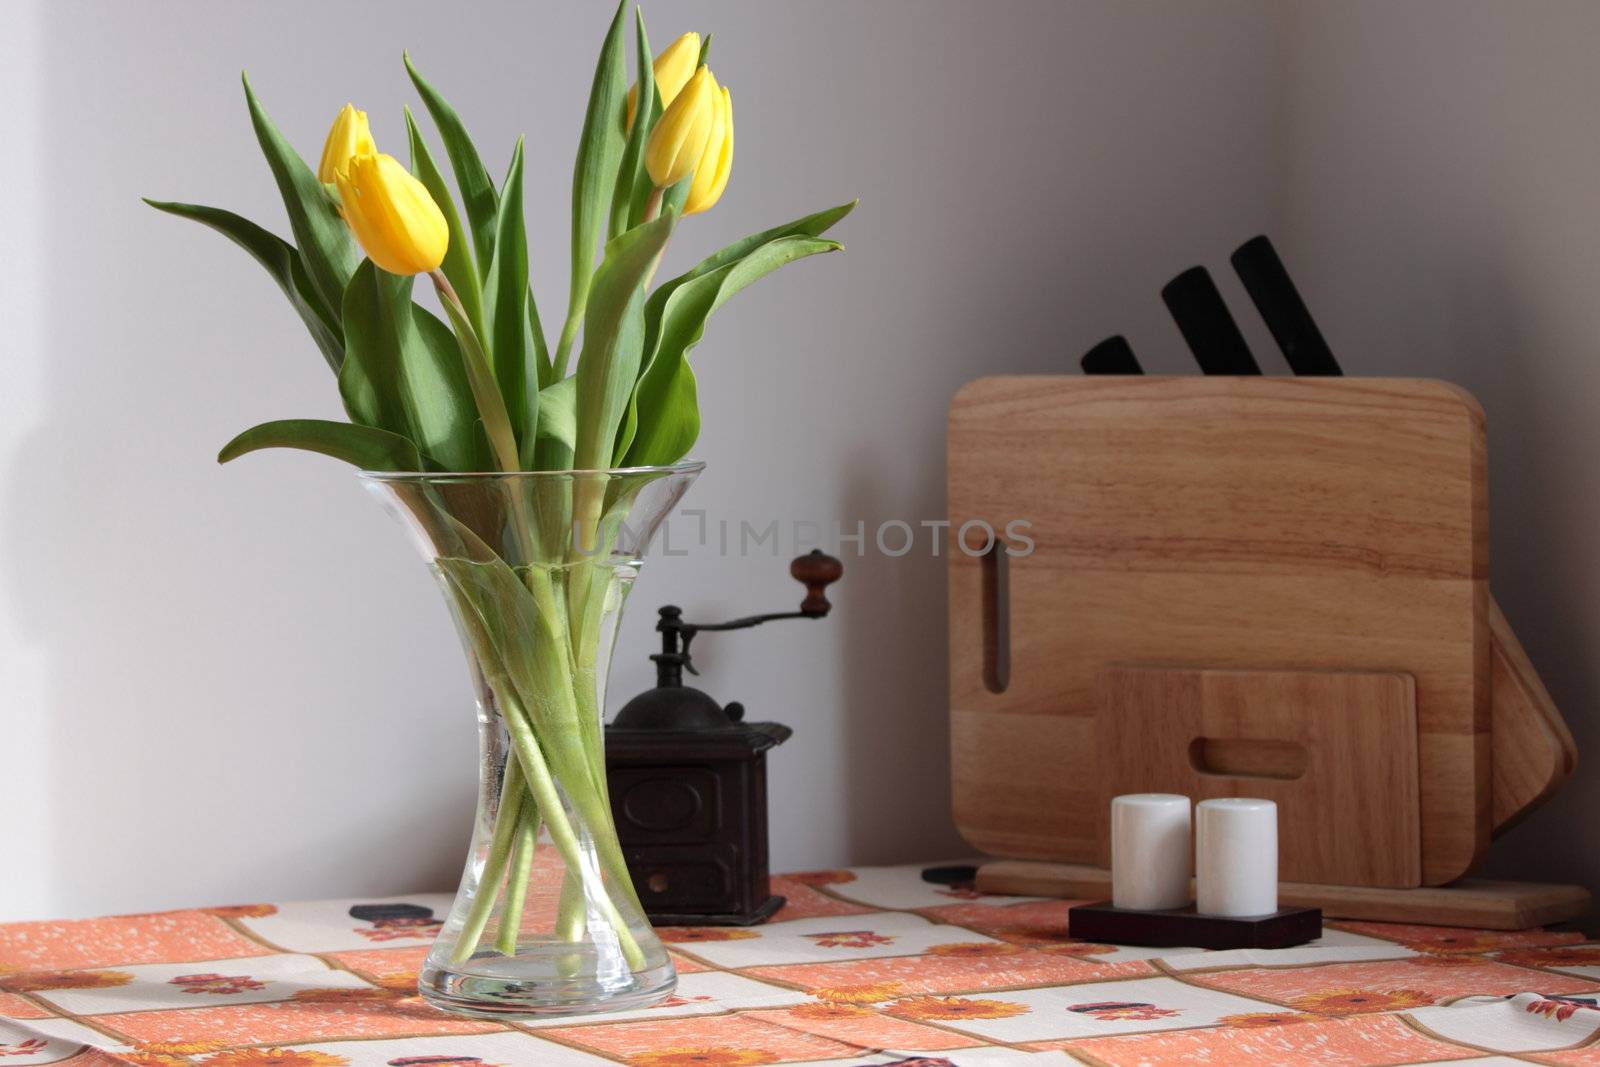 tulips on kitchen table